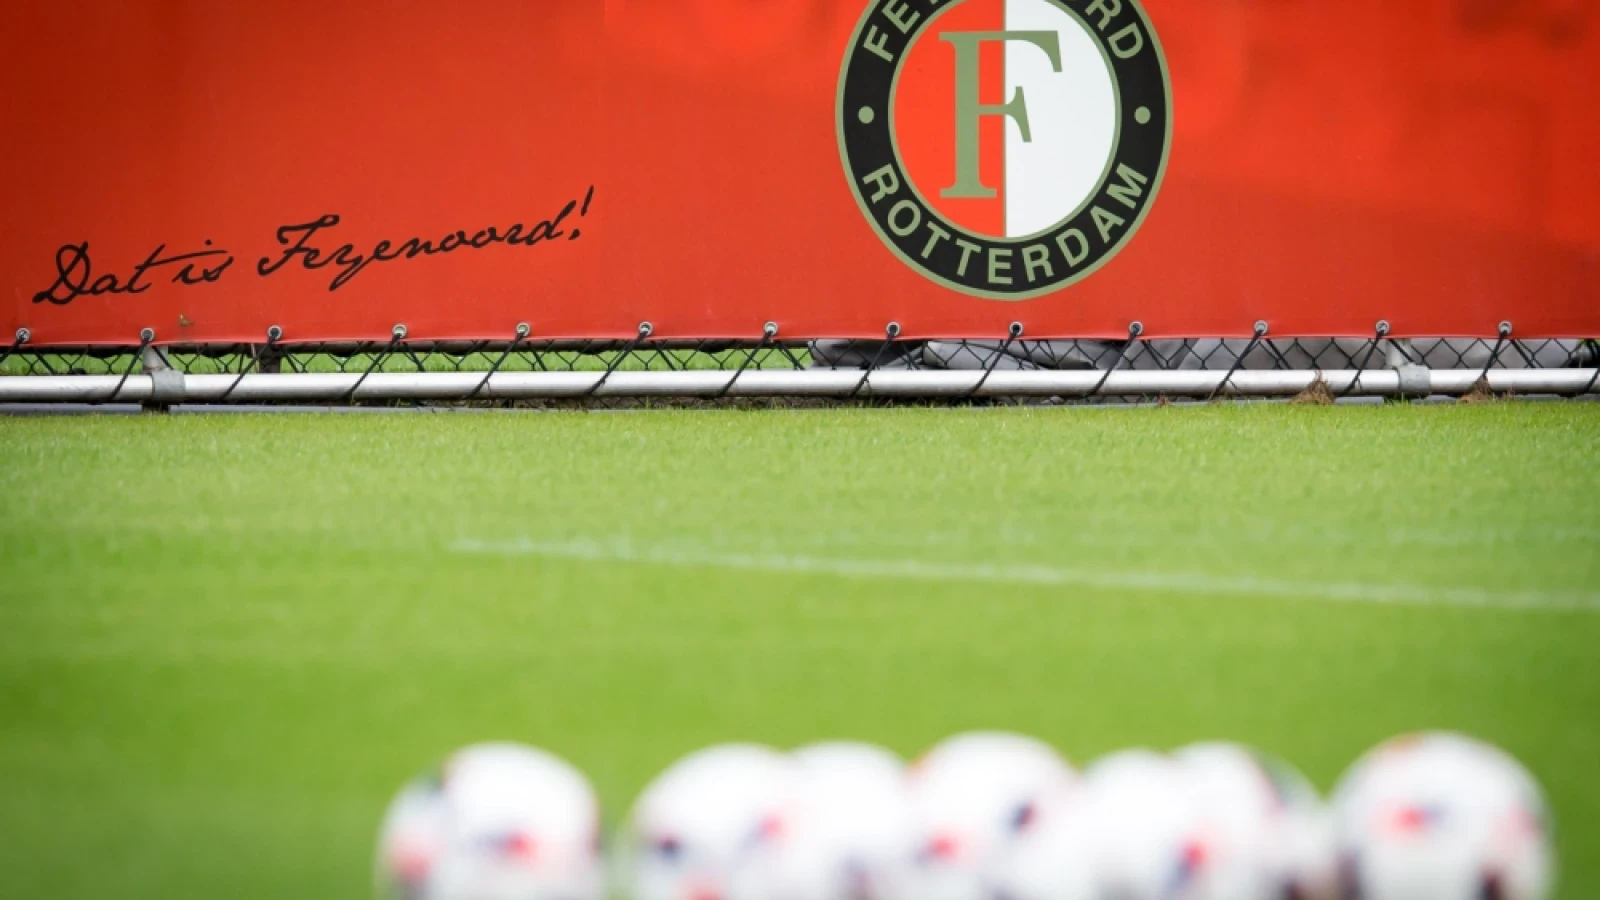 UITGELICHT | De tegenstanders van Feyenoord